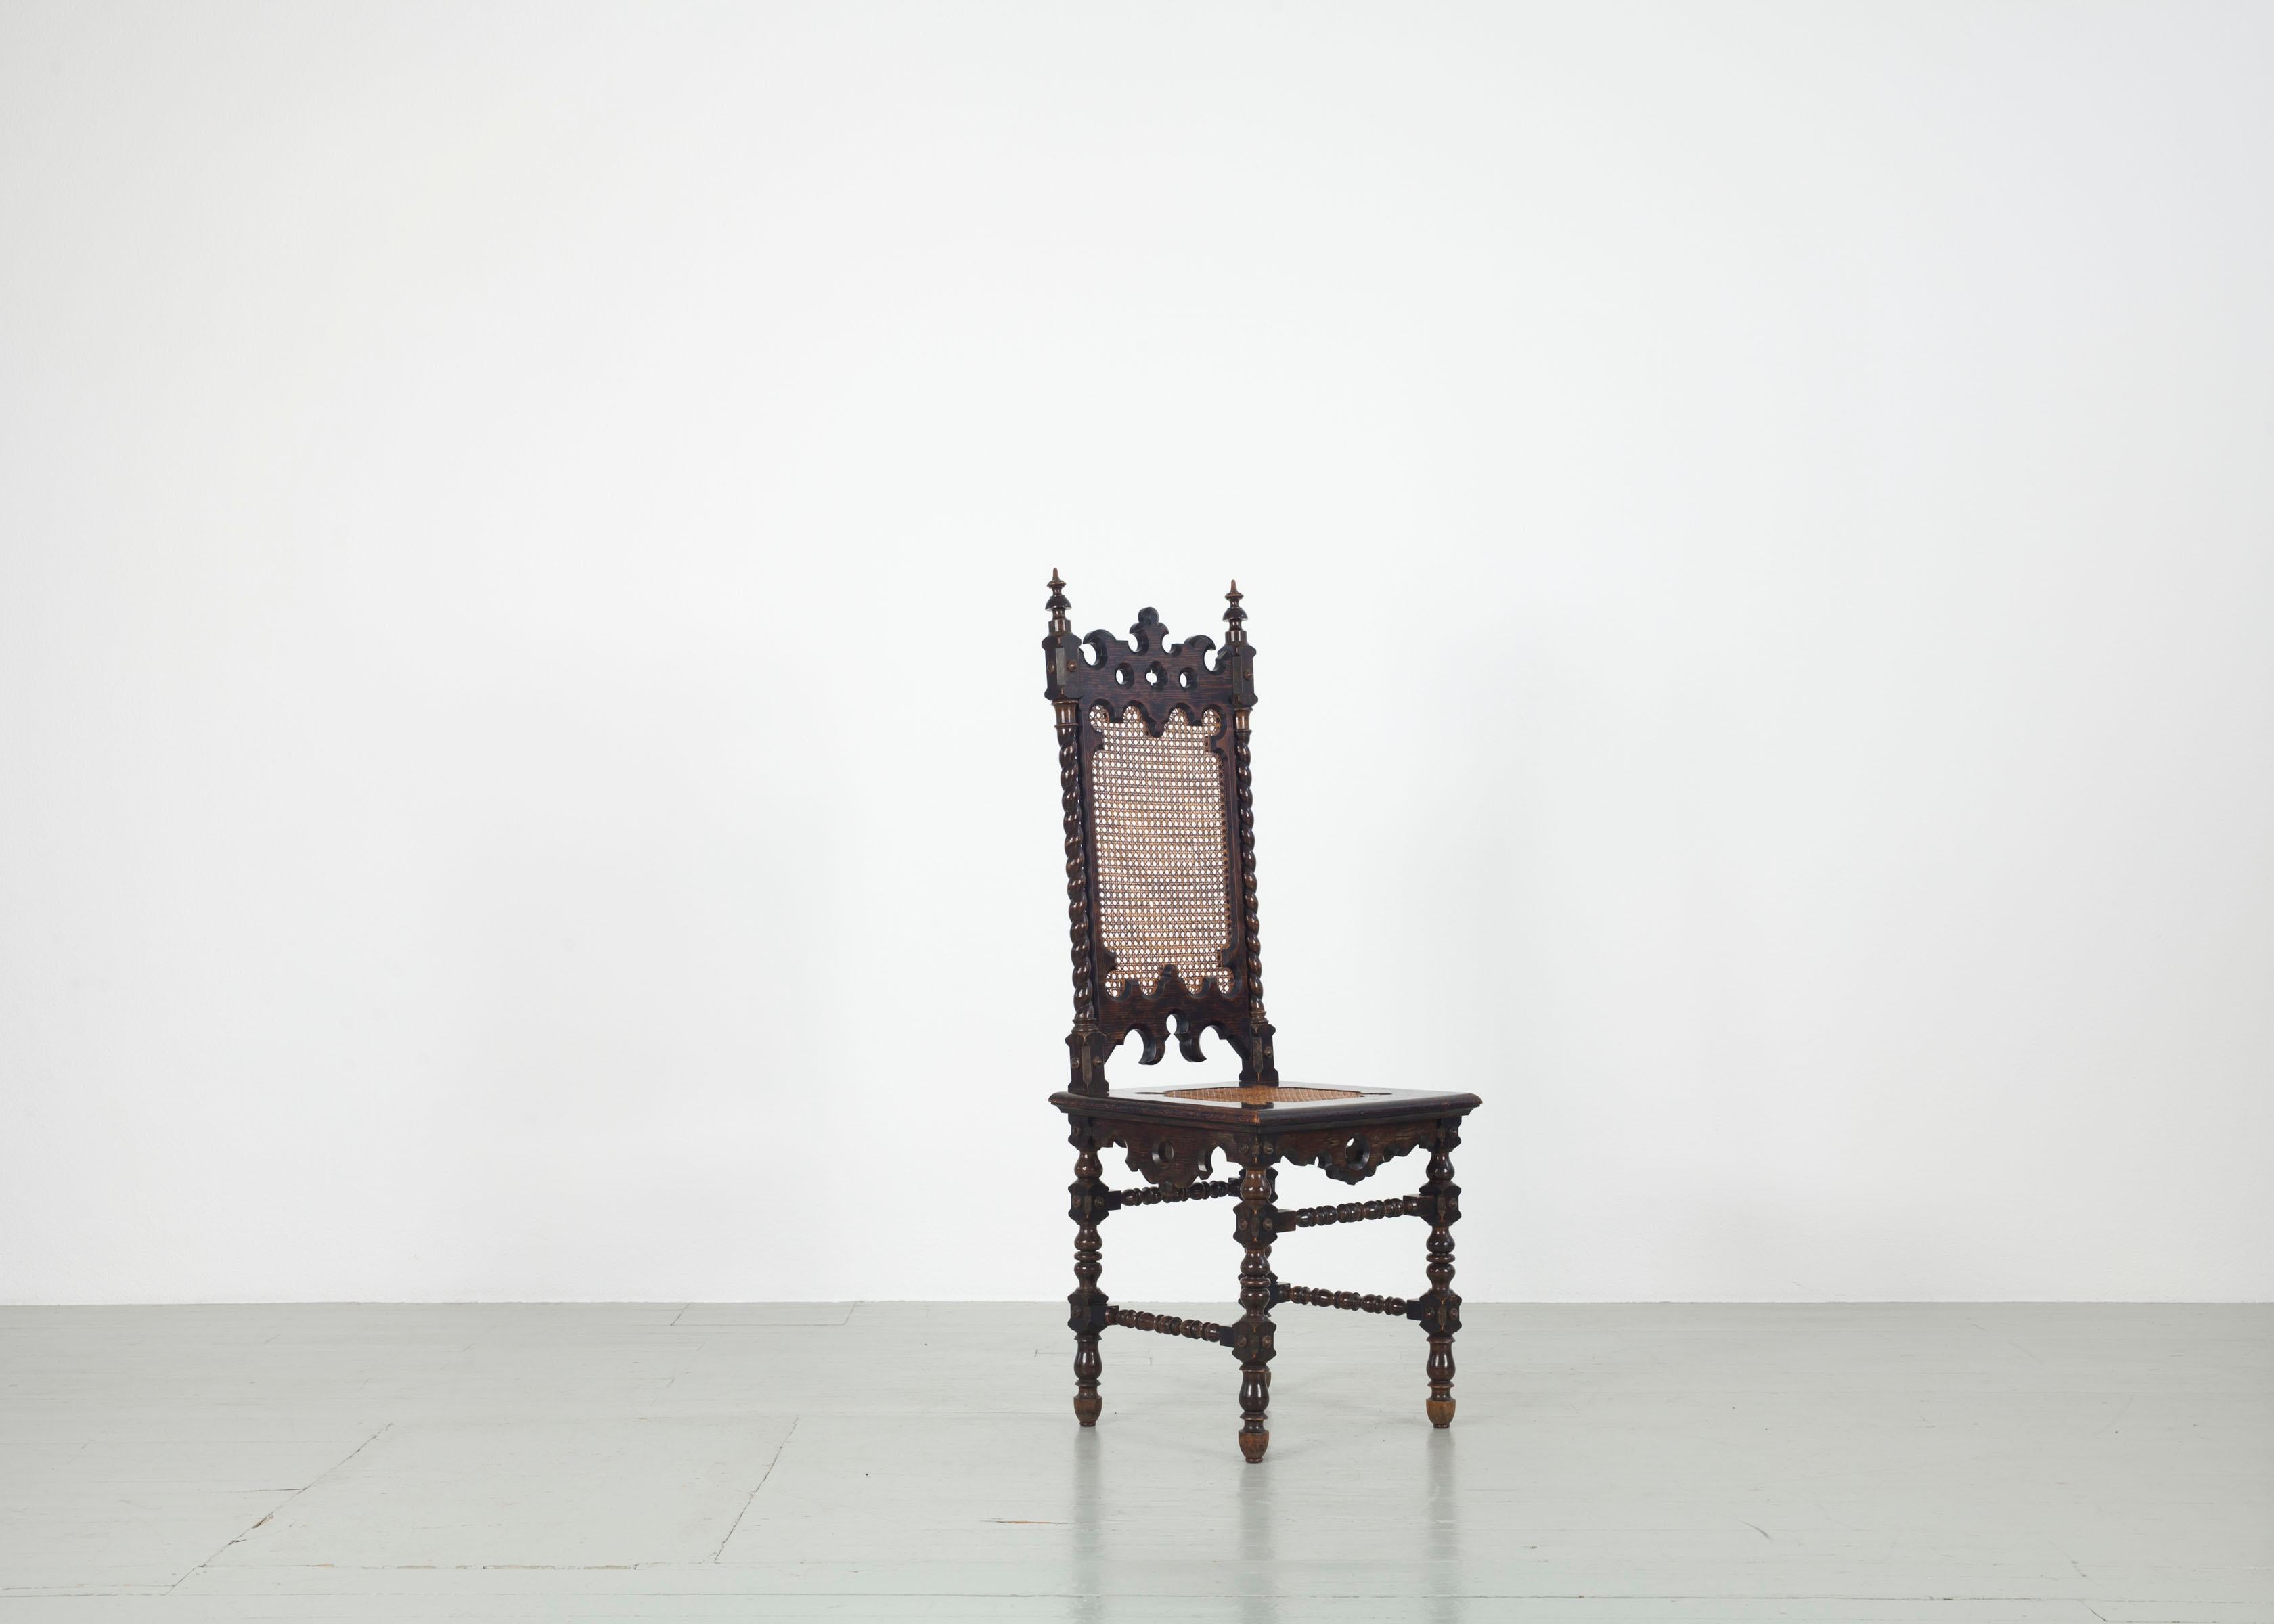 Cet ensemble de six chaises néo-gothiques a été fabriqué dans les années 1890. Le cadre en chêne teinté foncé est de forme complexe et présente des caractéristiques néo-gothiques typiques. Les divers ornements et éléments décoratifs rendent ces